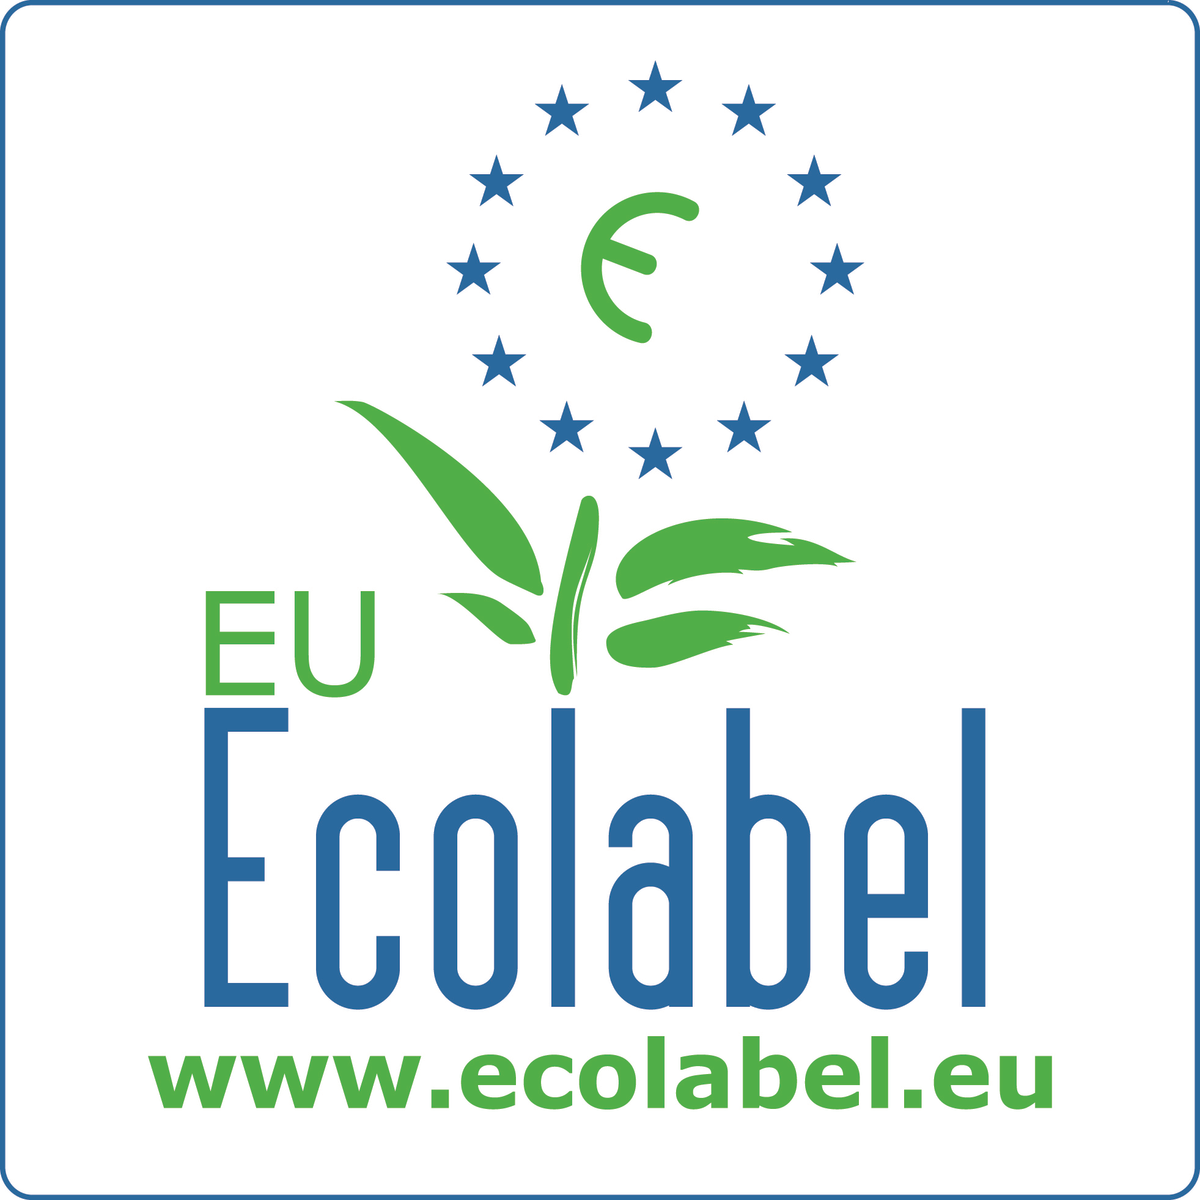 EU:s miljömärke (DK/030/001)